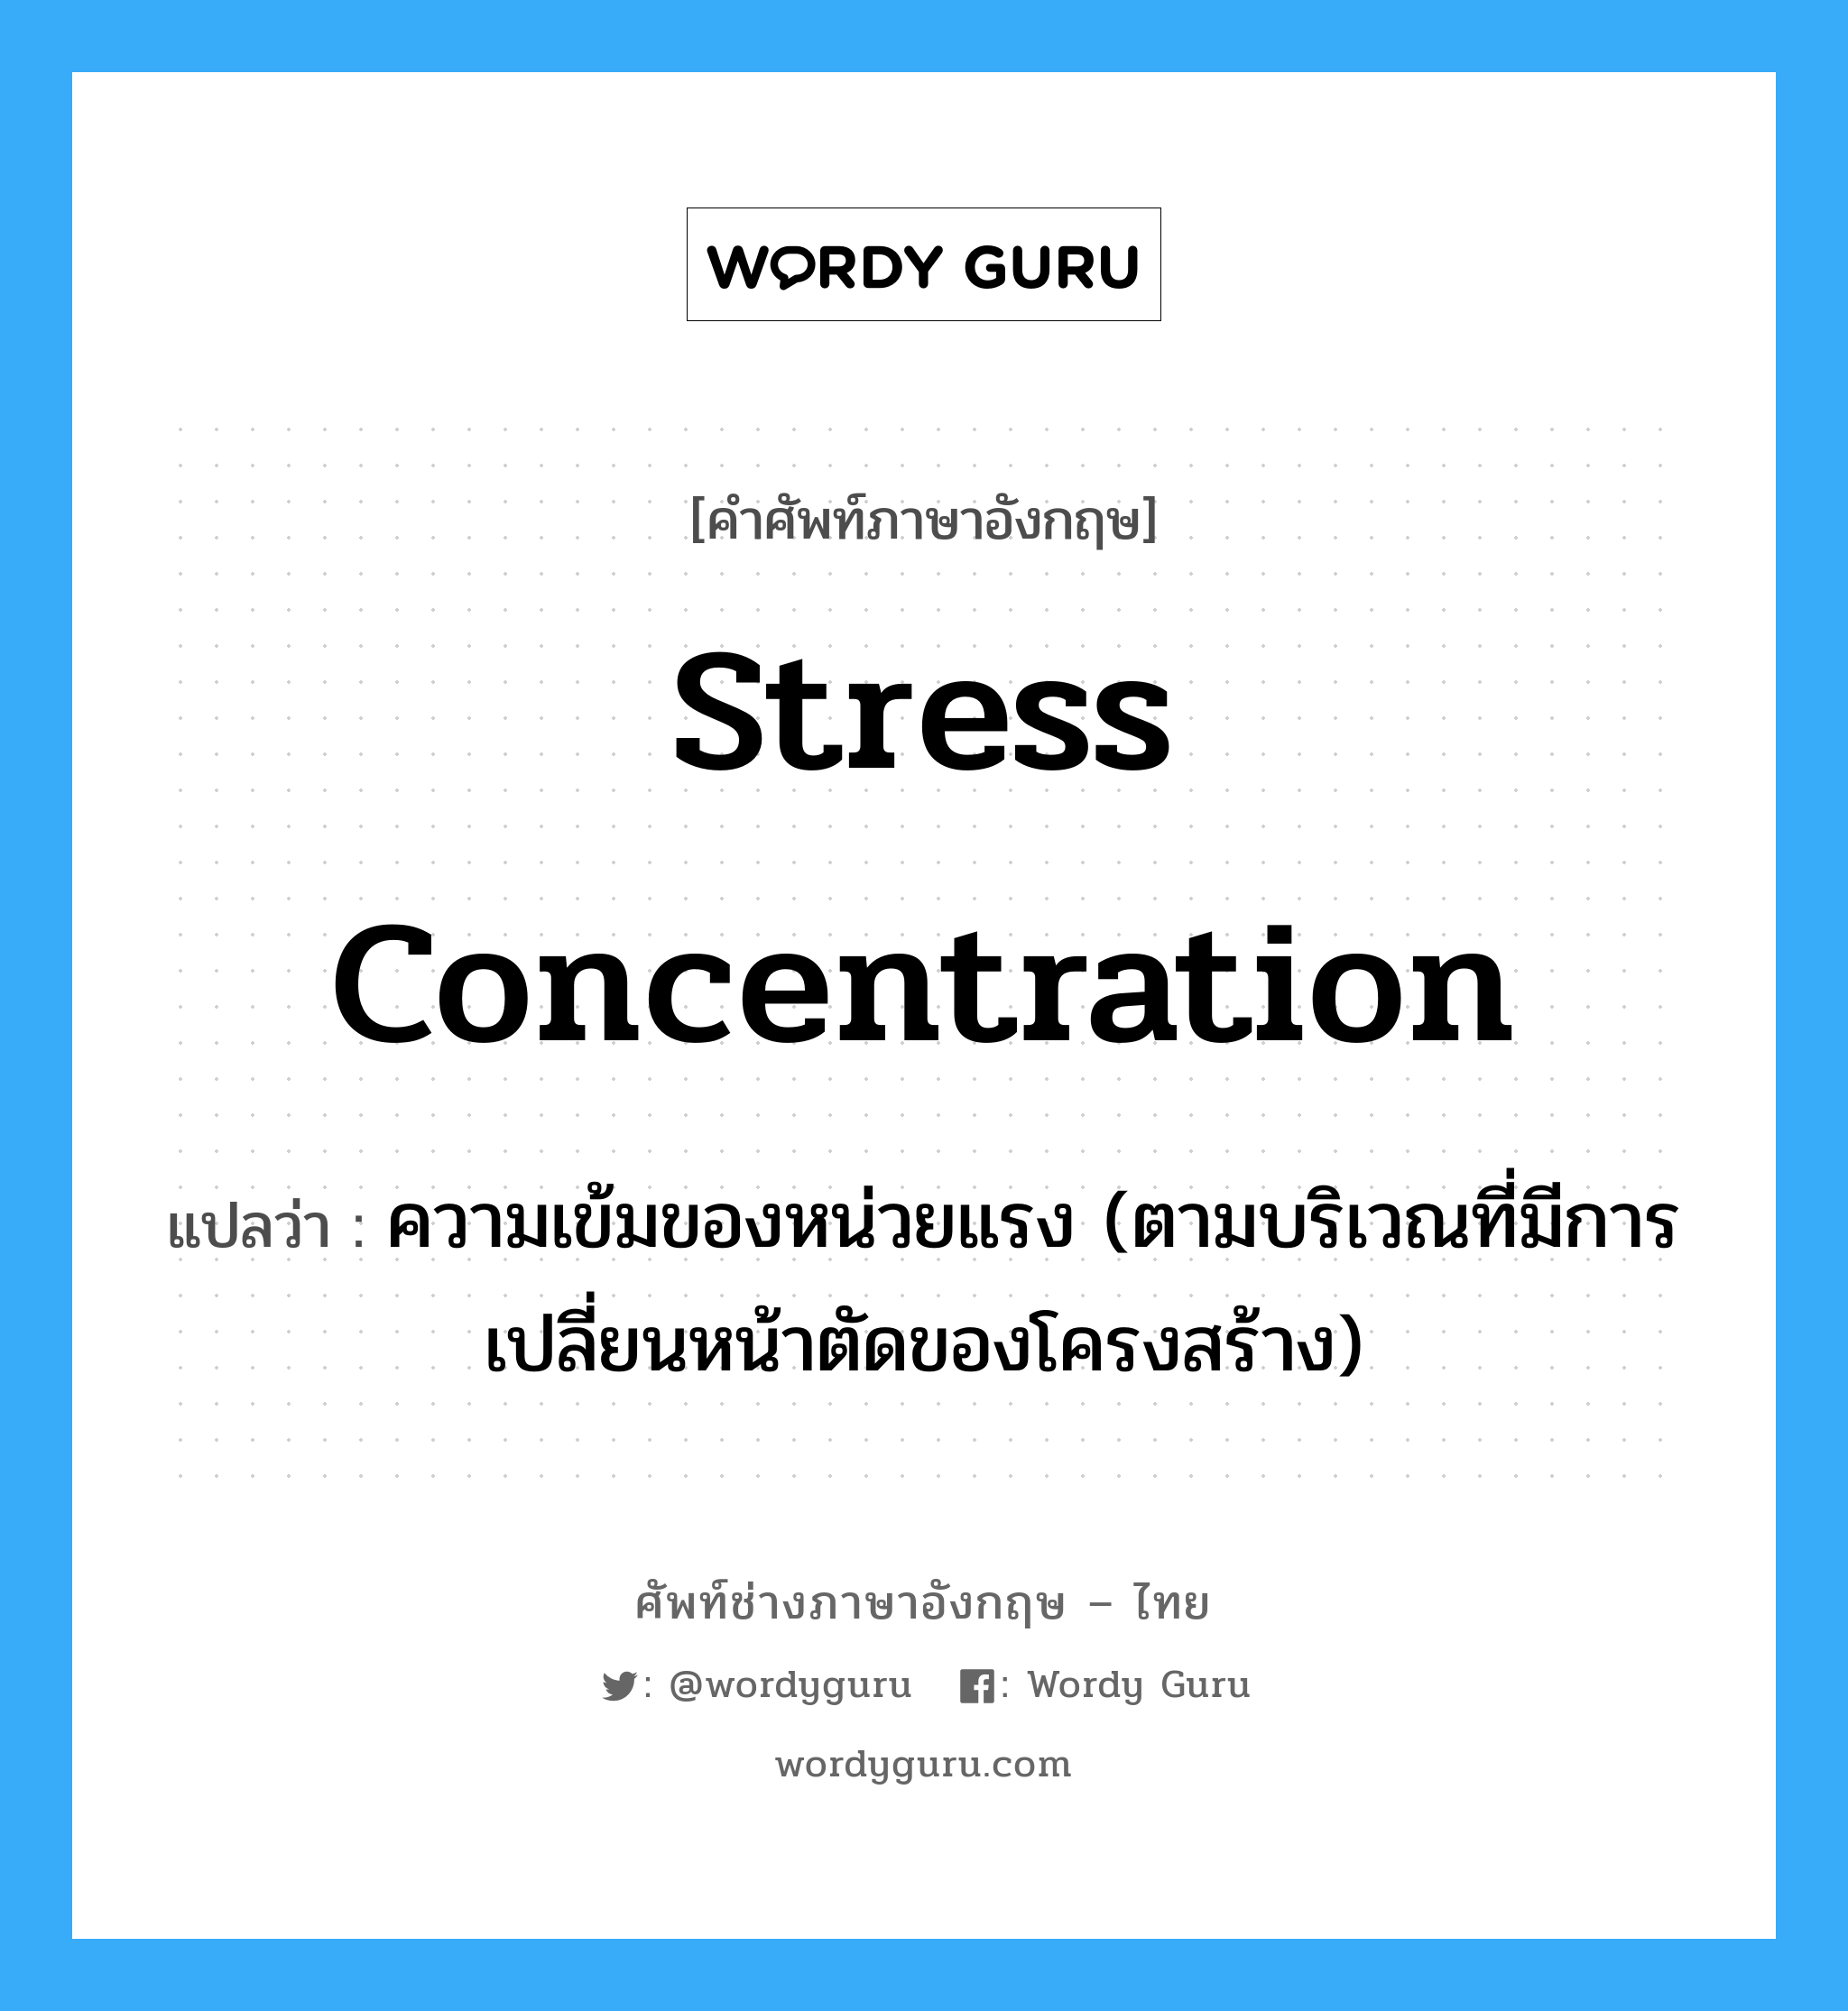 stress concentration แปลว่า?, คำศัพท์ช่างภาษาอังกฤษ - ไทย stress concentration คำศัพท์ภาษาอังกฤษ stress concentration แปลว่า ความเข้มของหน่วยแรง (ตามบริเวณที่มีการเปลี่ยนหน้าตัดของโครงสร้าง)